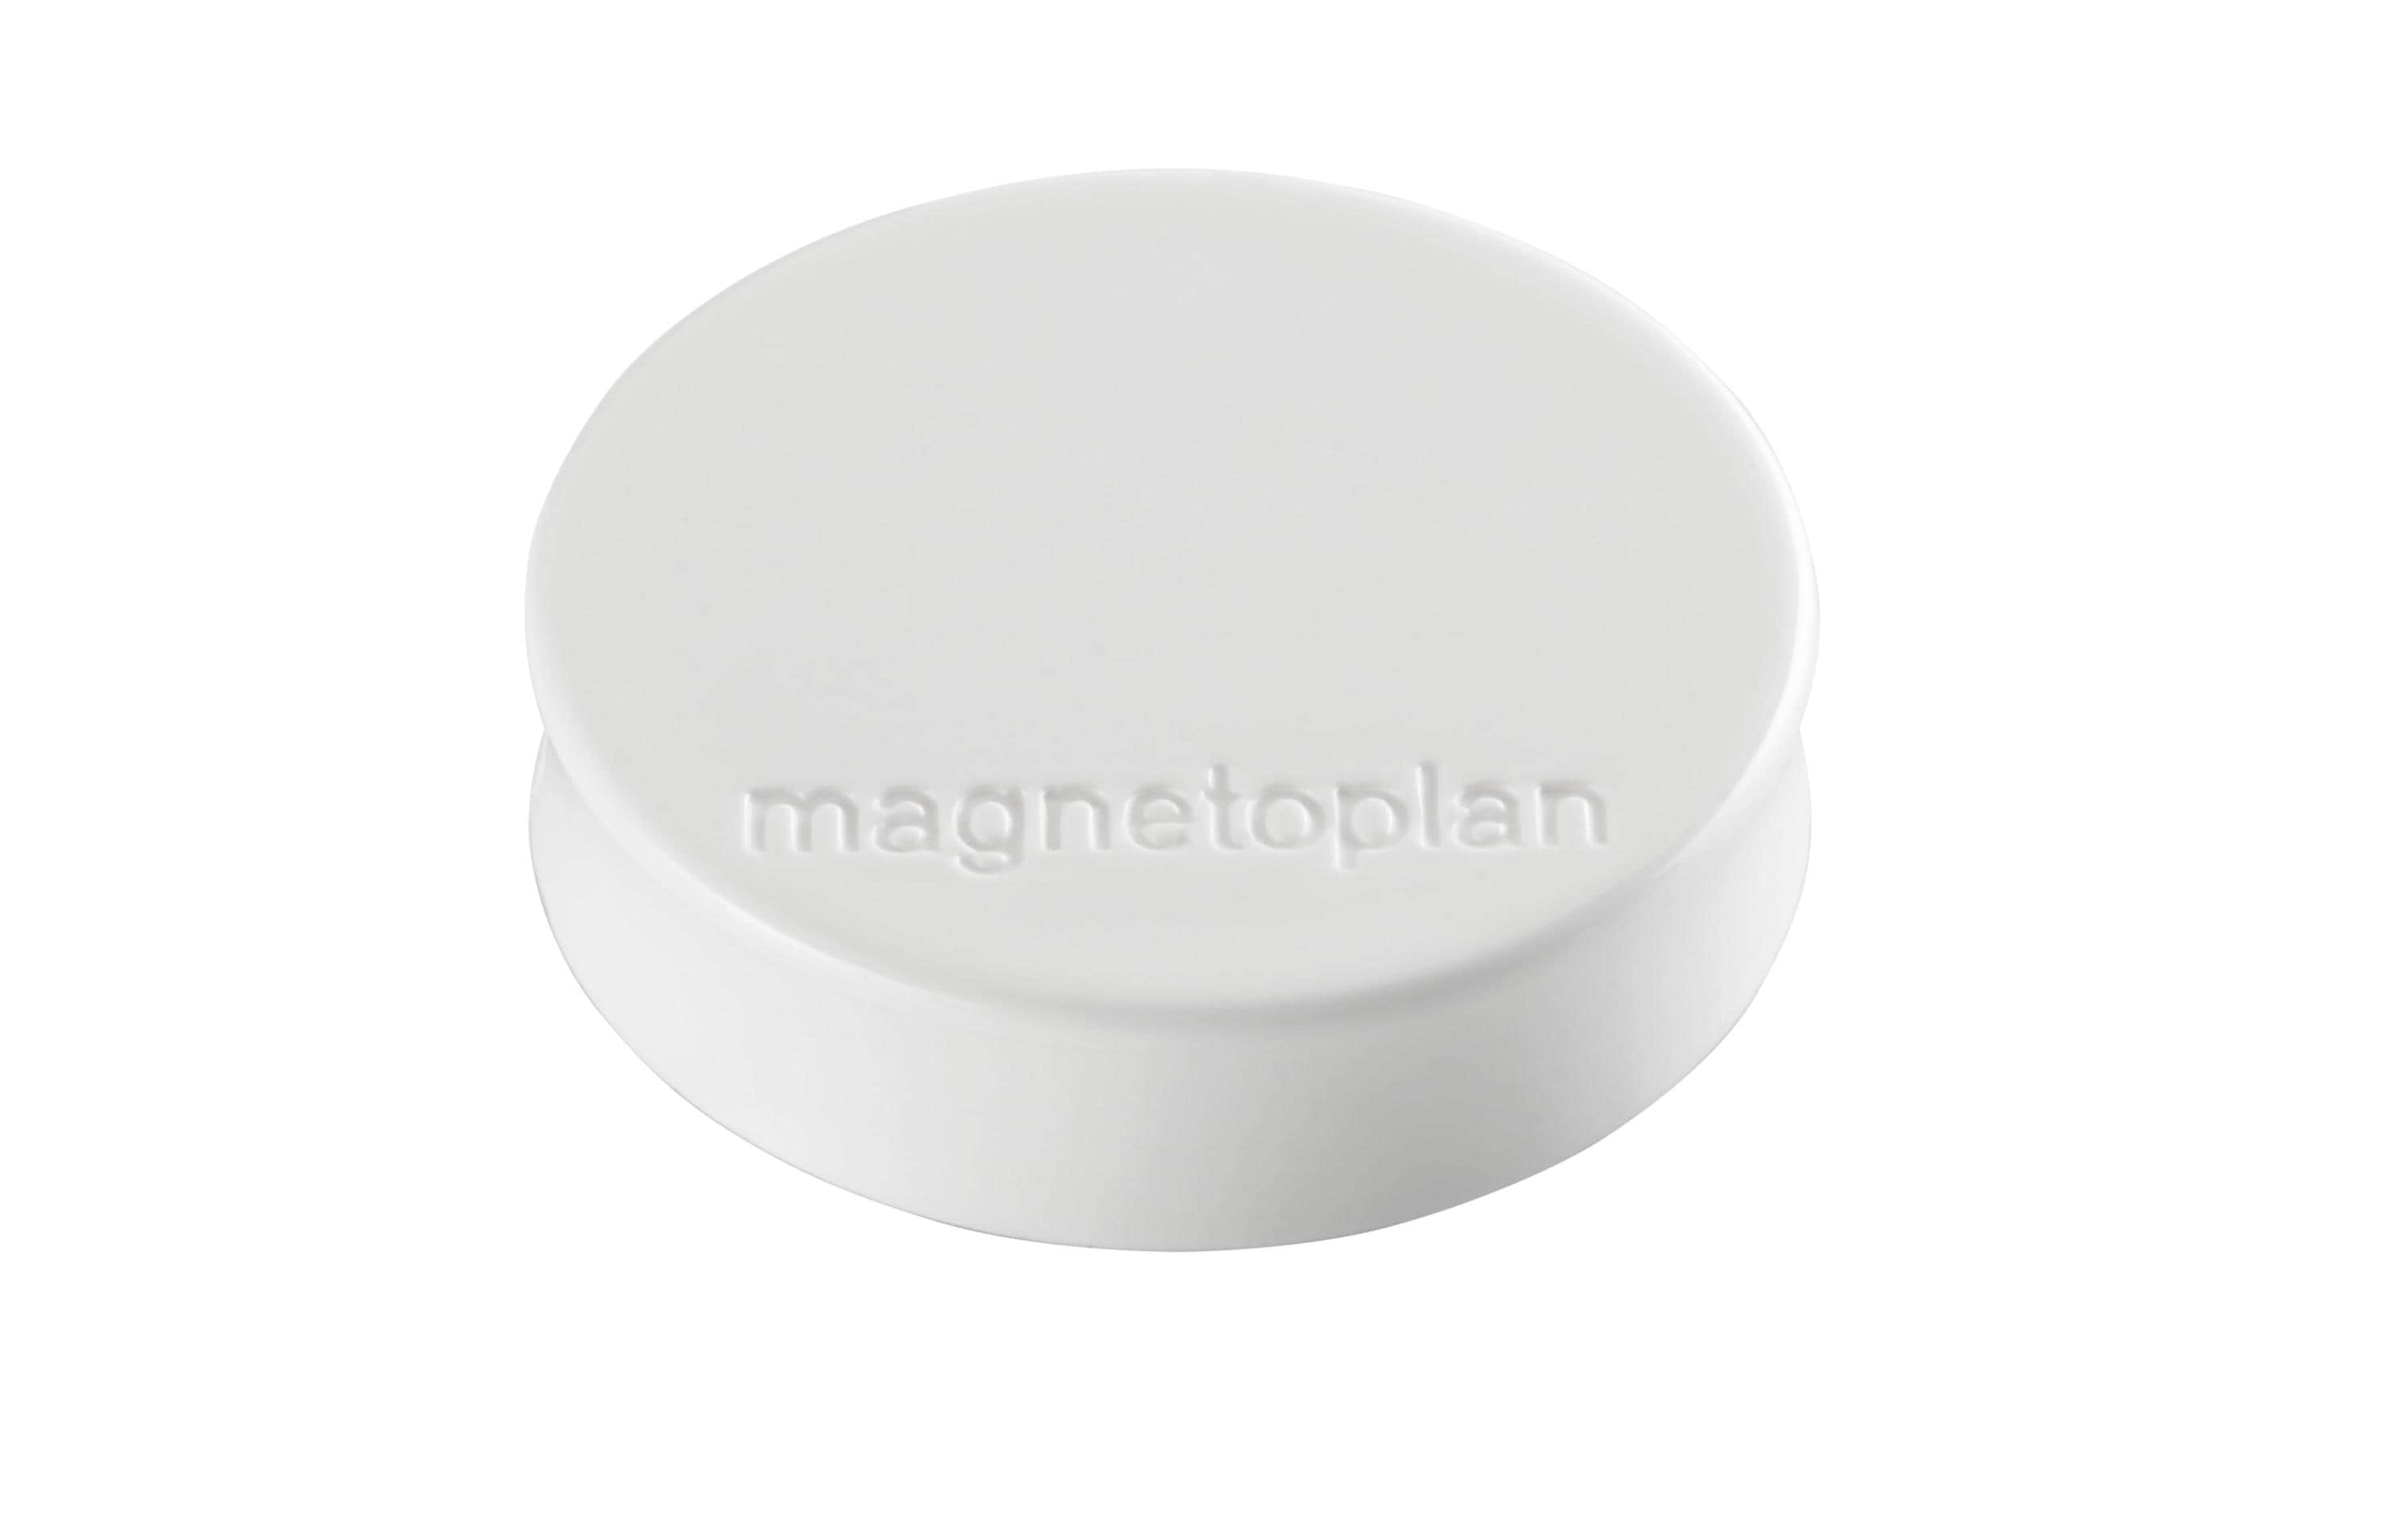 Magnetoplan Haftmagnet Ergo Medium Ø 3 cm Weiss, 10 Stück